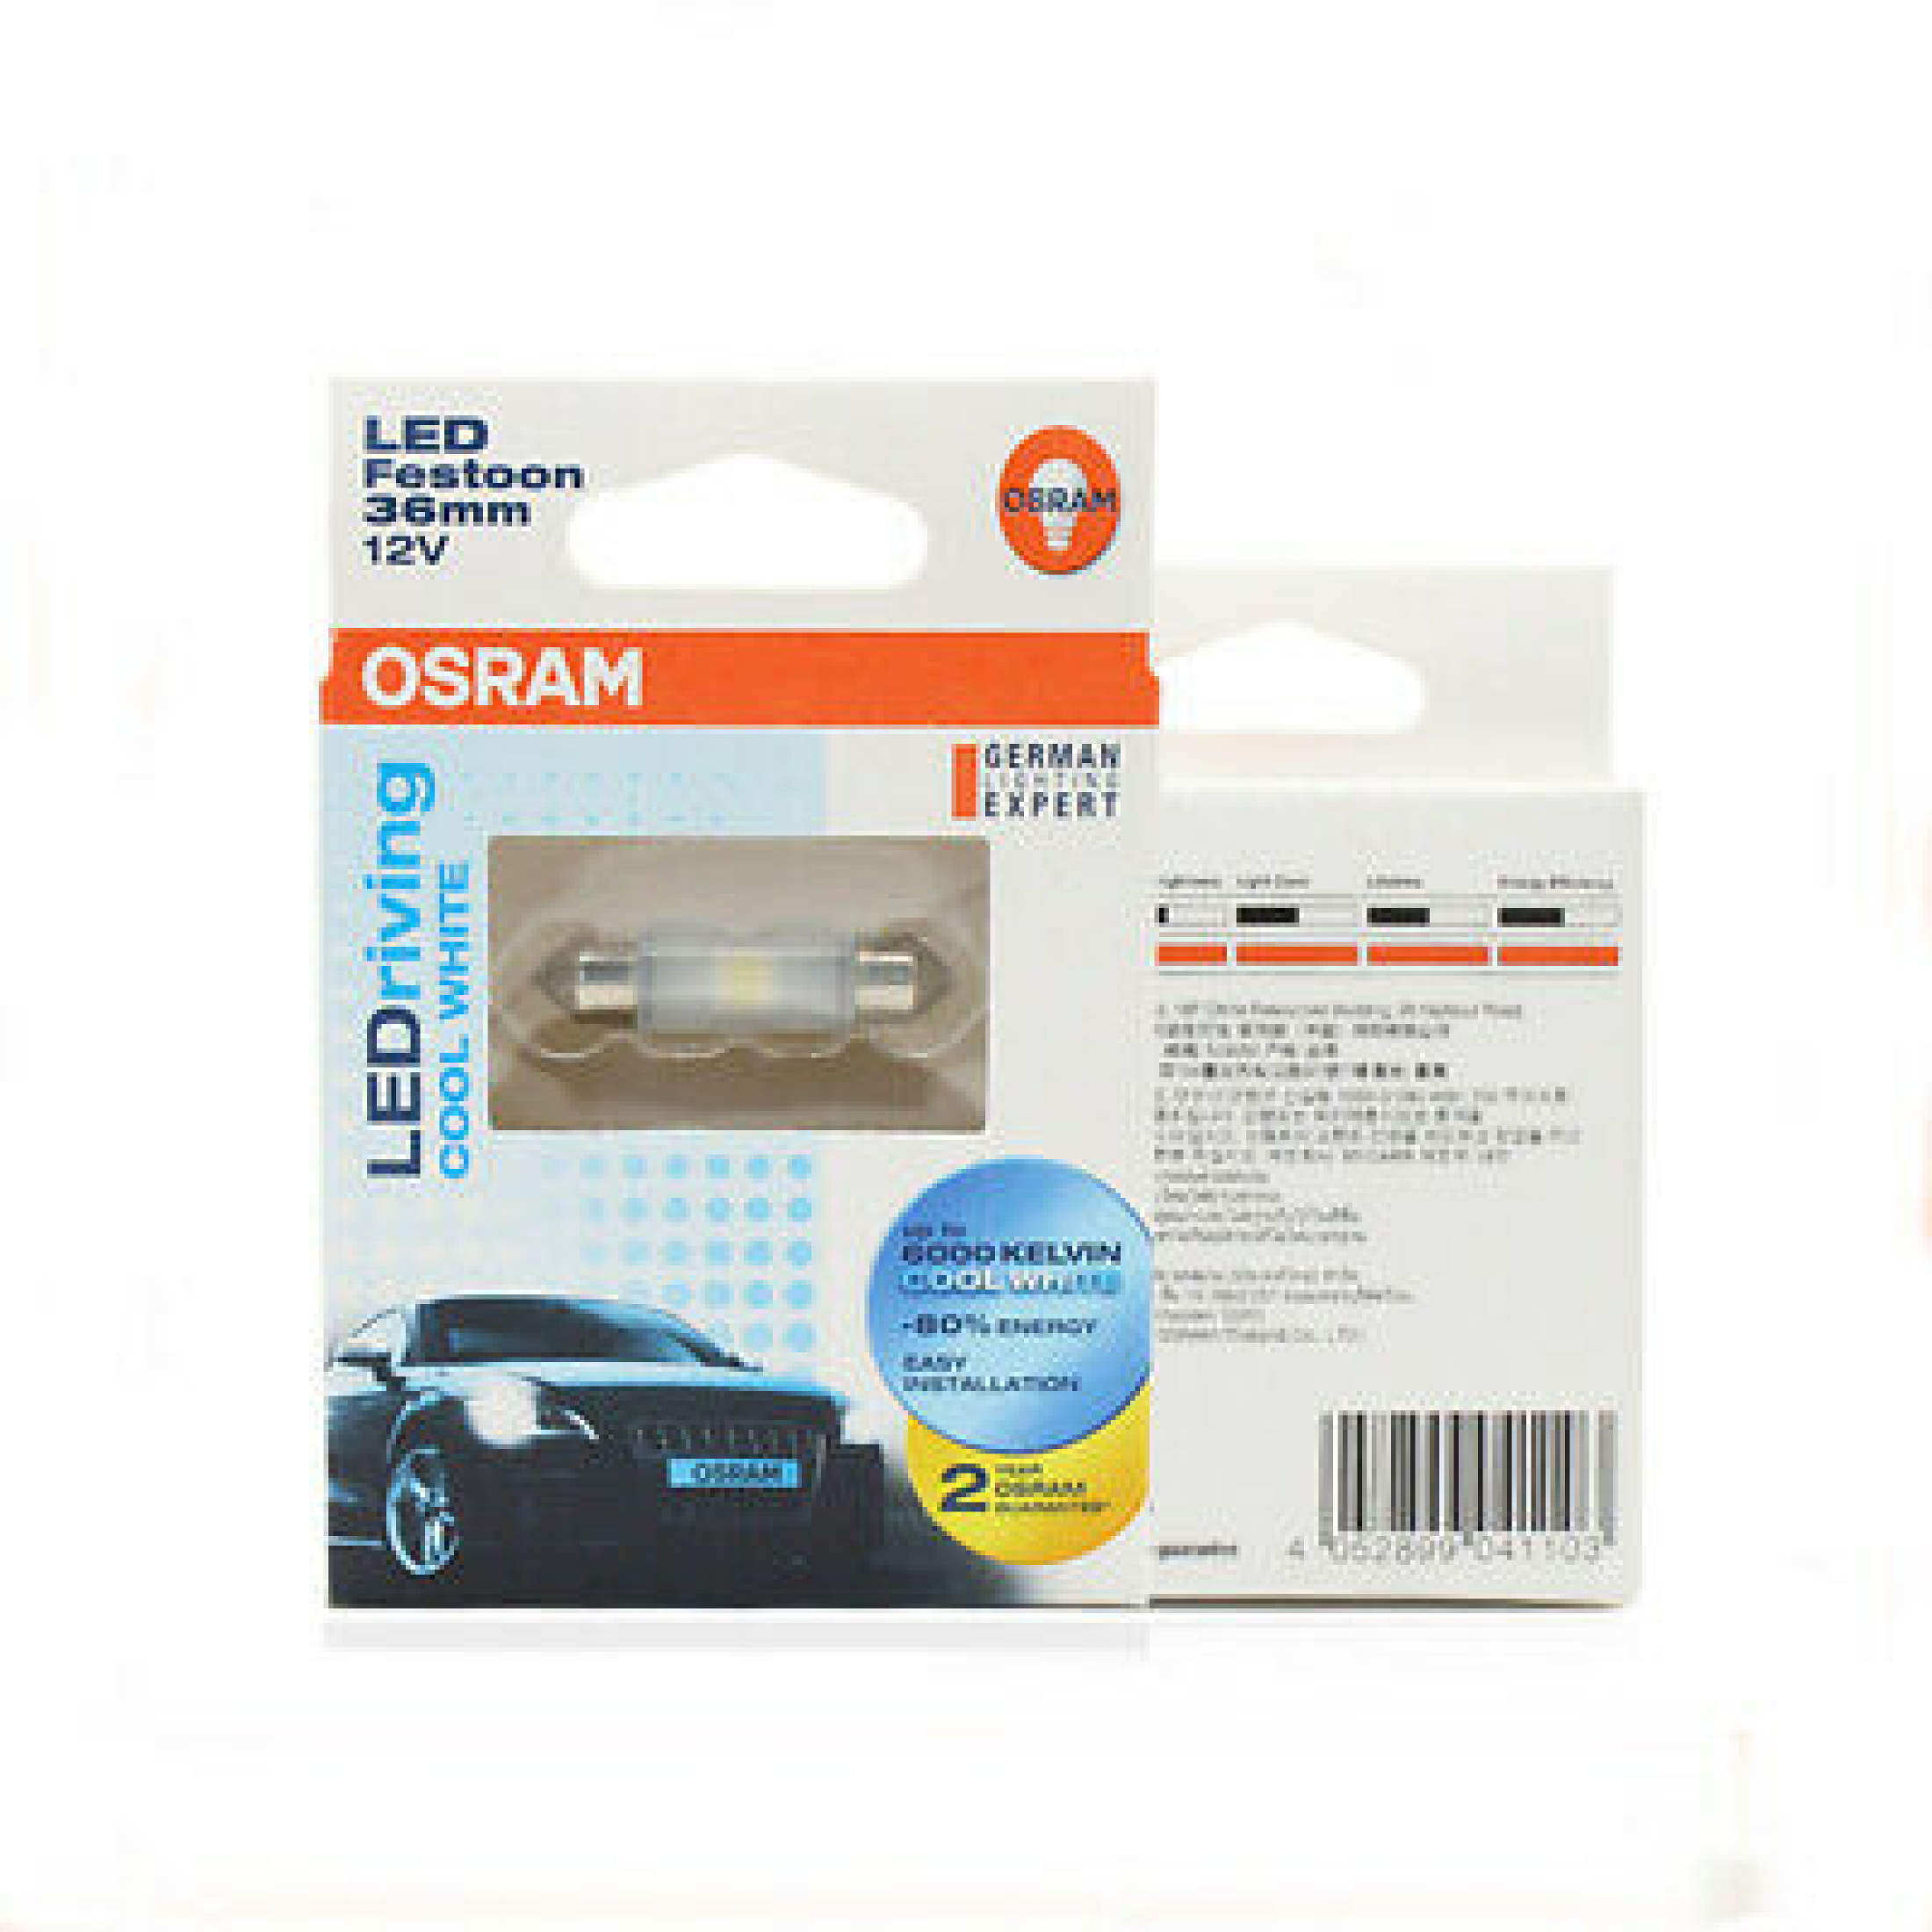 OSRAM LED Festoon 36mm 12V Cool White Car Interior Light Bulbs 6000K 6436CW 10x36